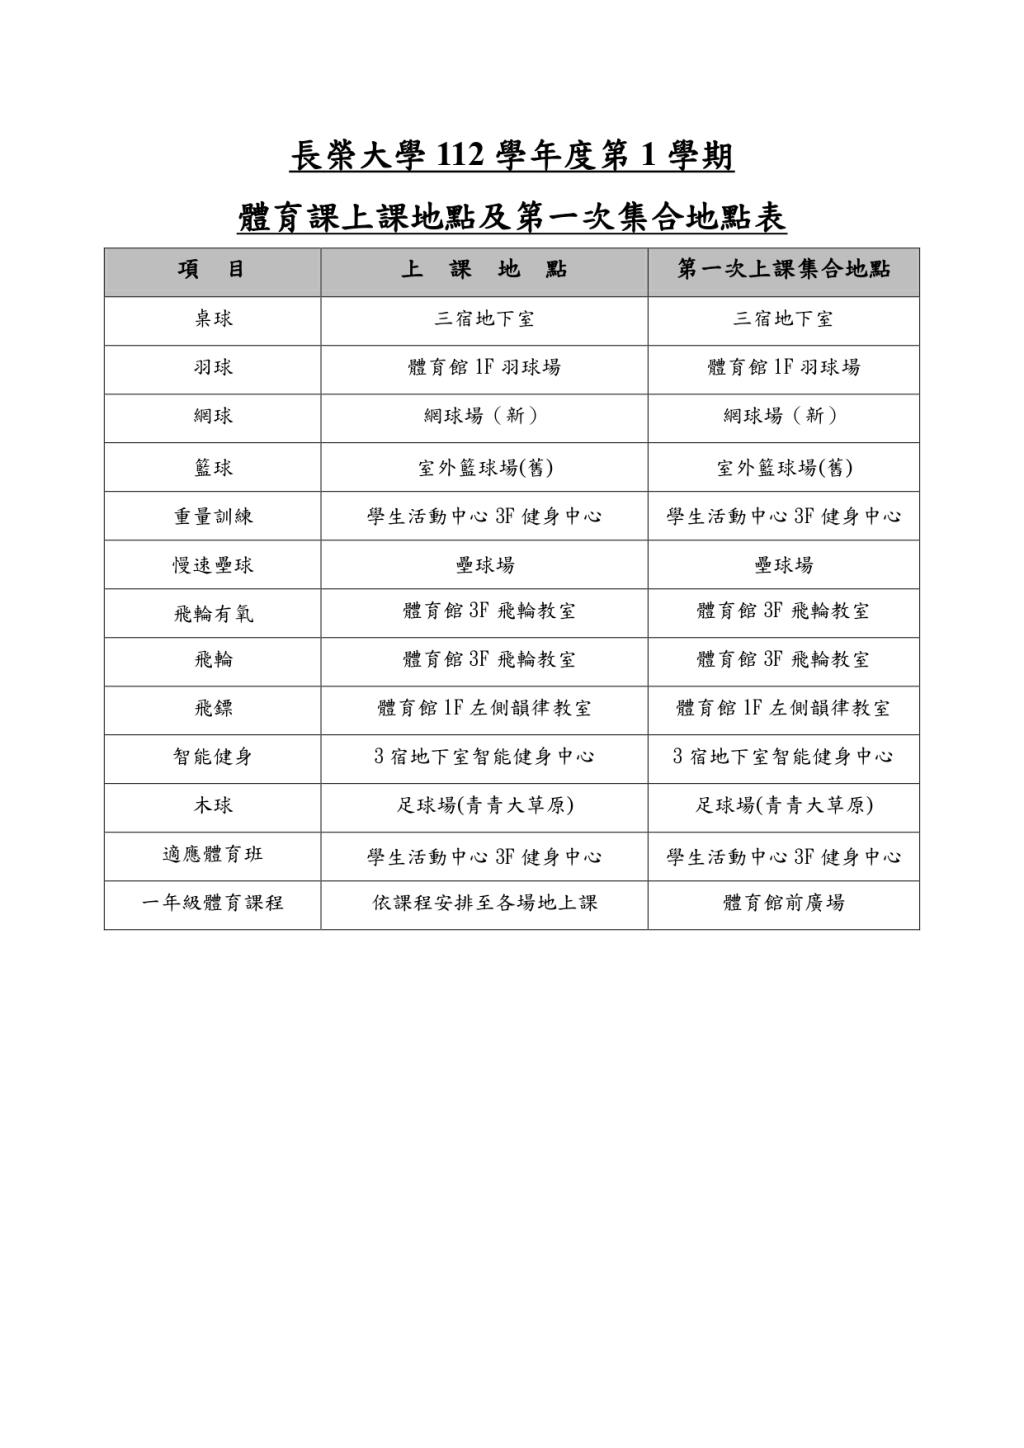 長榮大學112-1體育課上課地點及第1次集合地點表